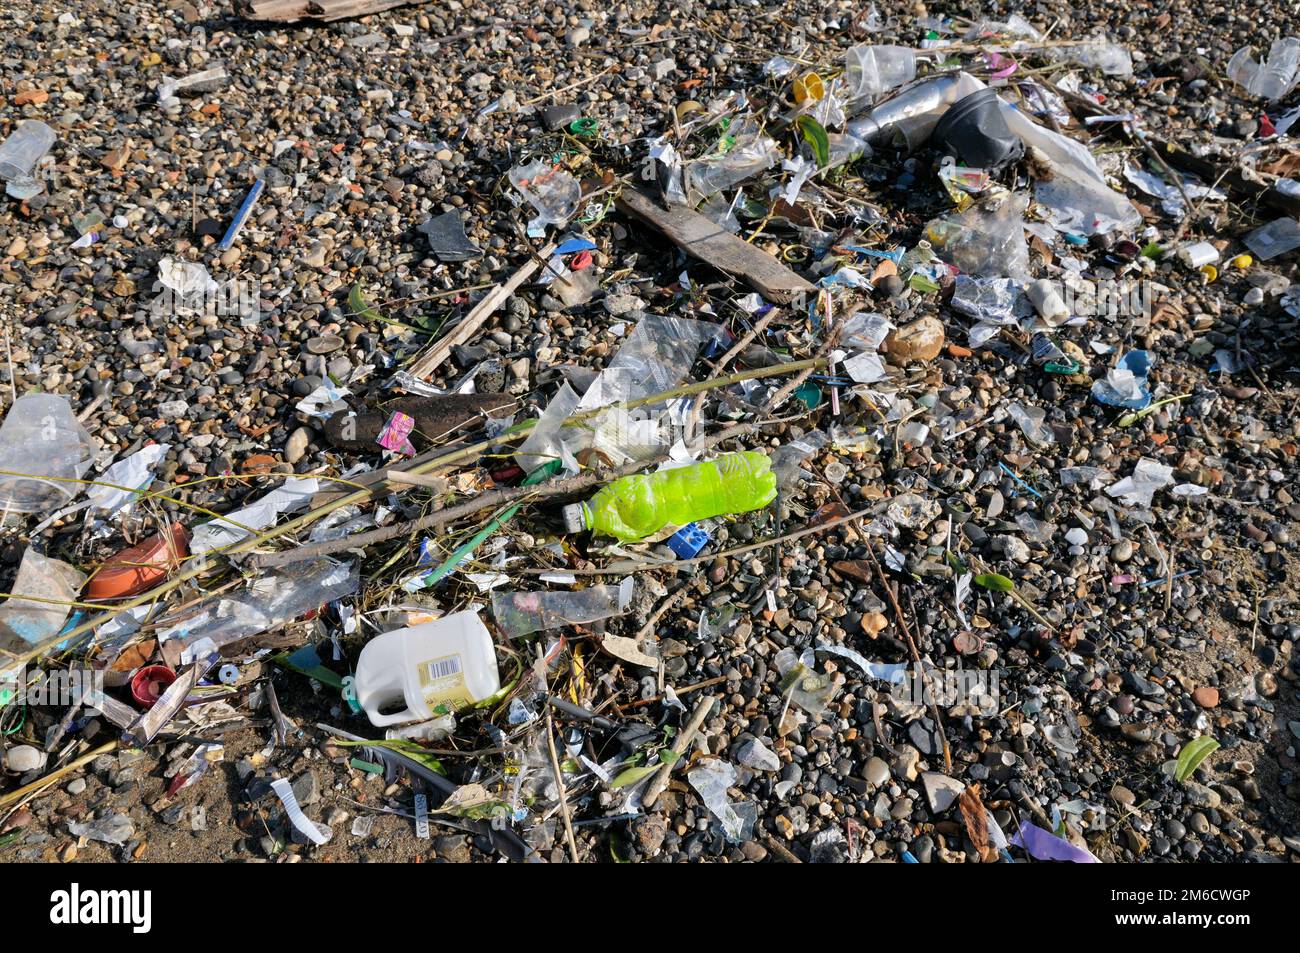 Die Umweltverschmutzung durch Plastikflotten und Düsen wurde an den Ufern der Themse, London, England, Großbritannien, angespült Stockfoto